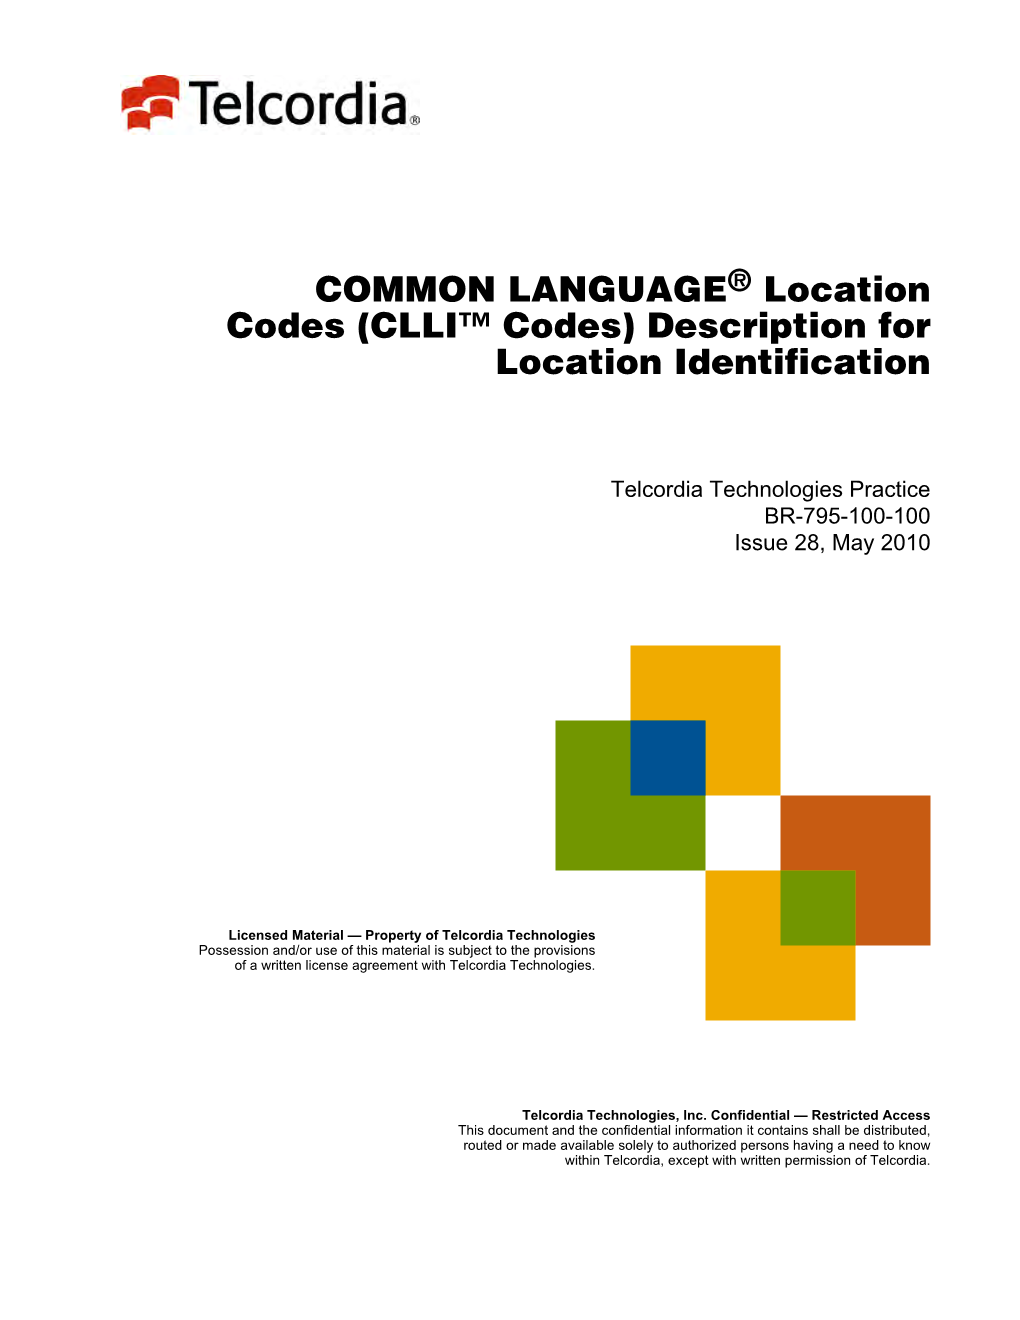 CLLI™ Codes) Description for Location Identification